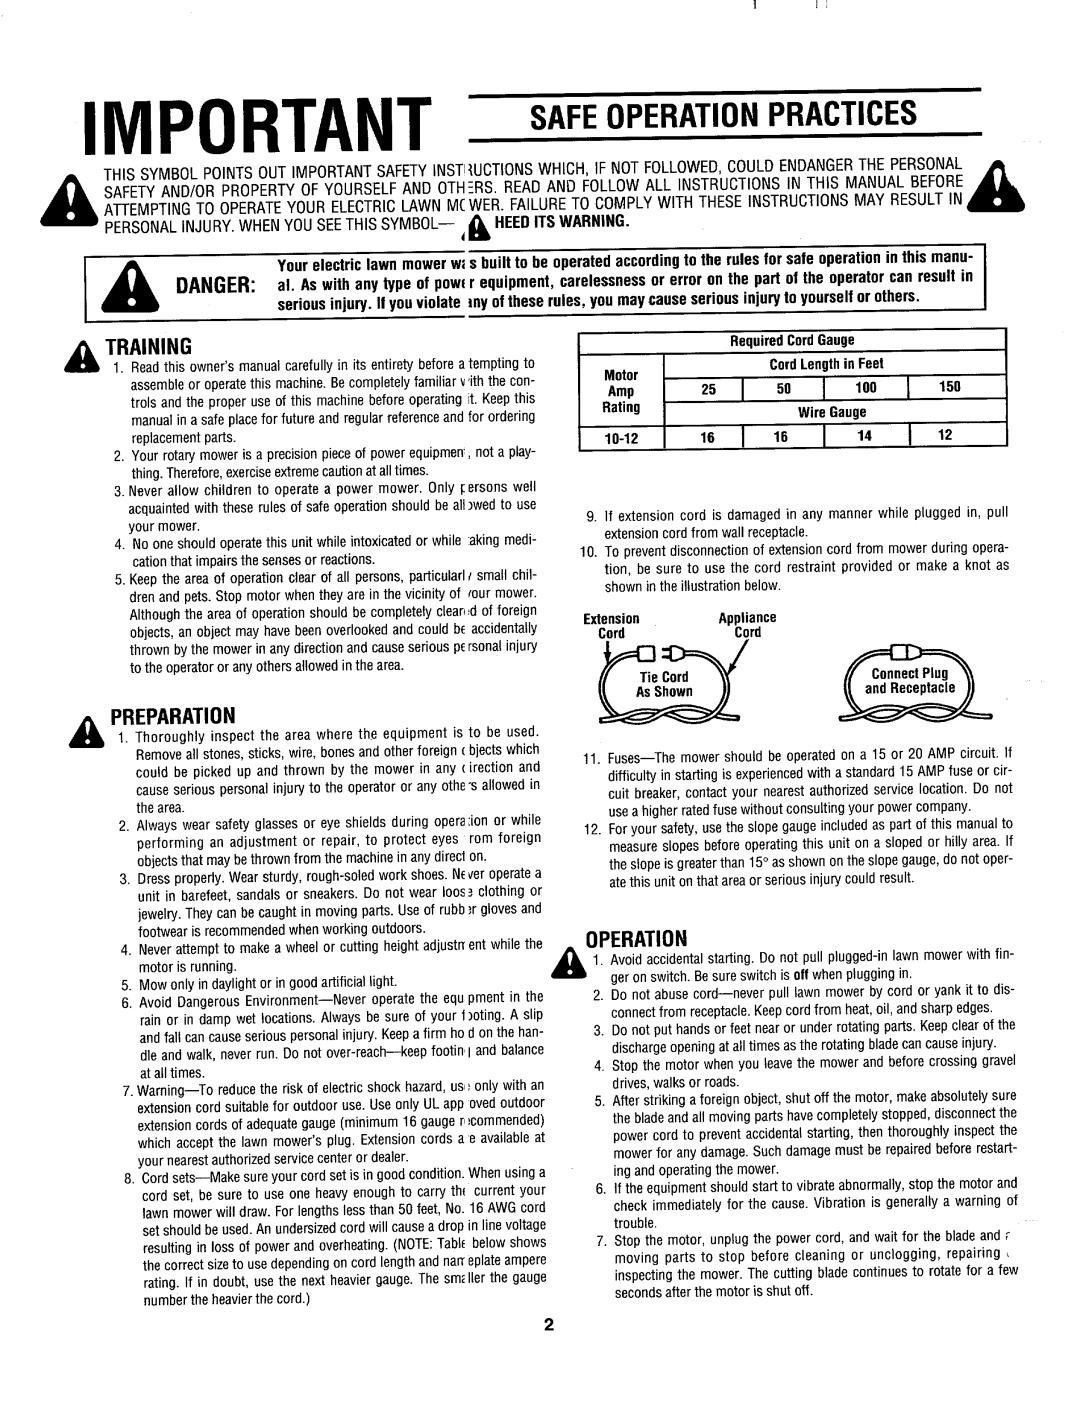 MTD 182-387B000 manual 